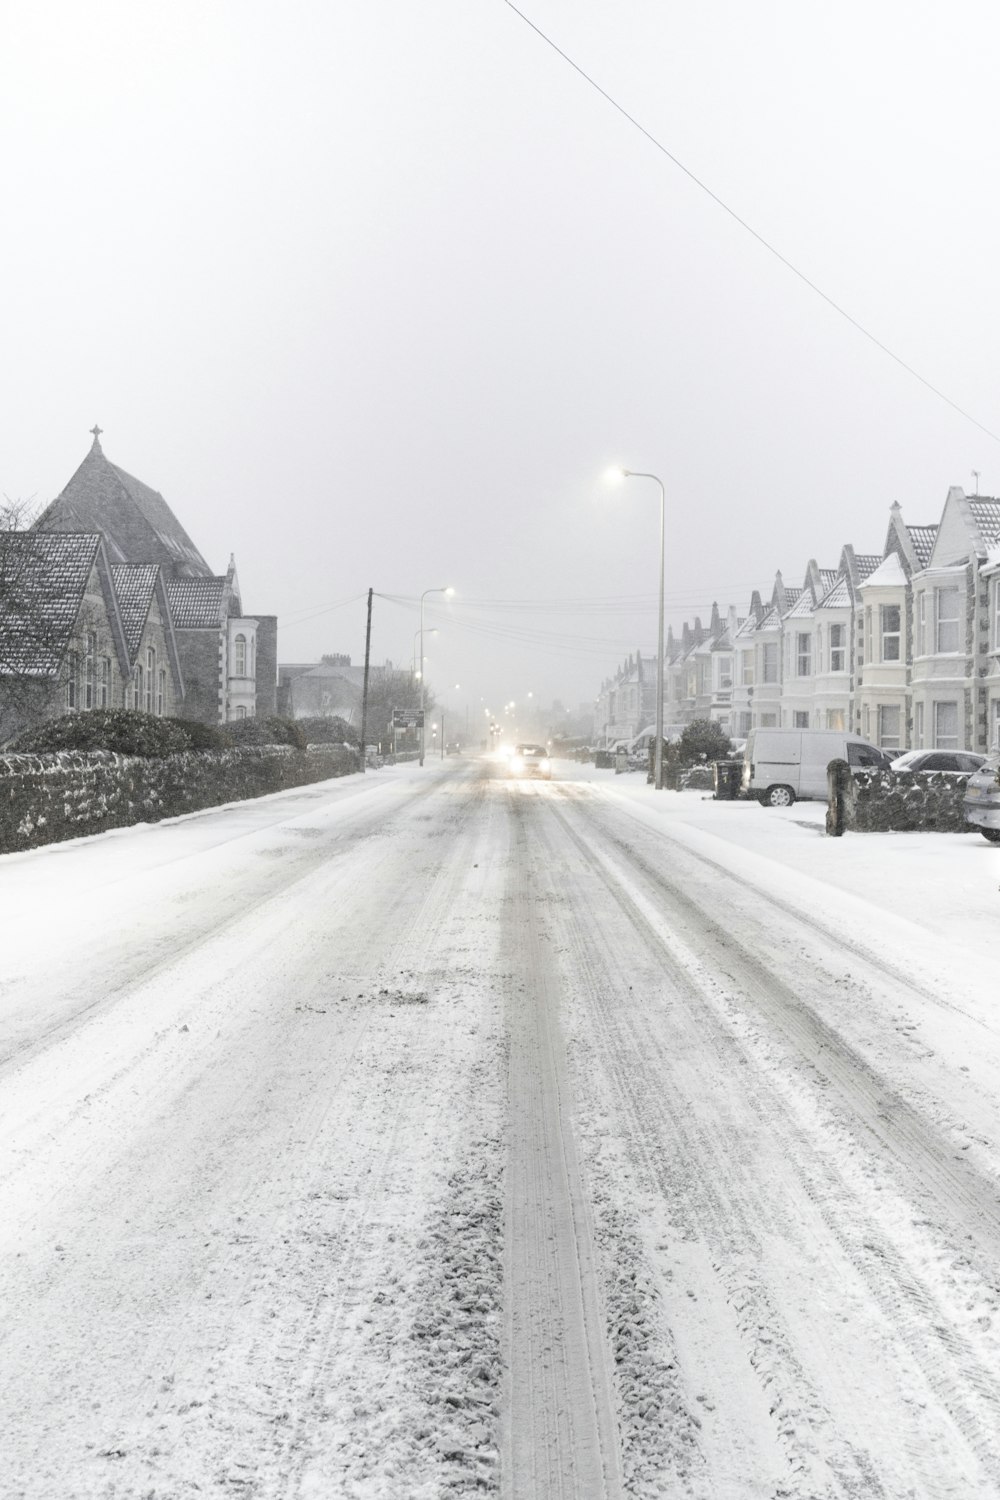 村と車の間の雪に覆われた道路